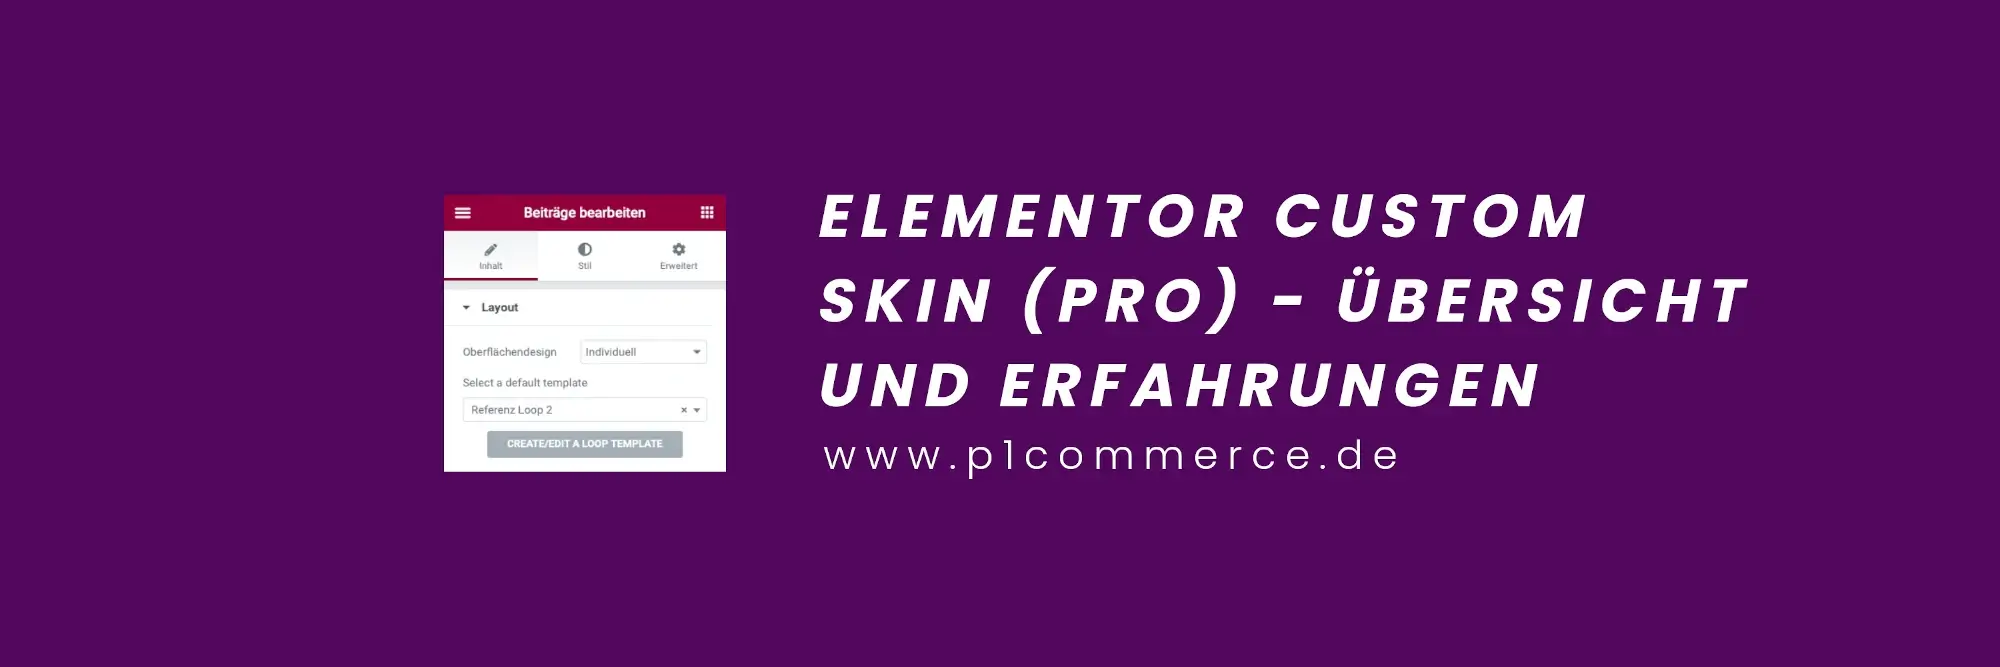 elementor custom skin p1 commerce